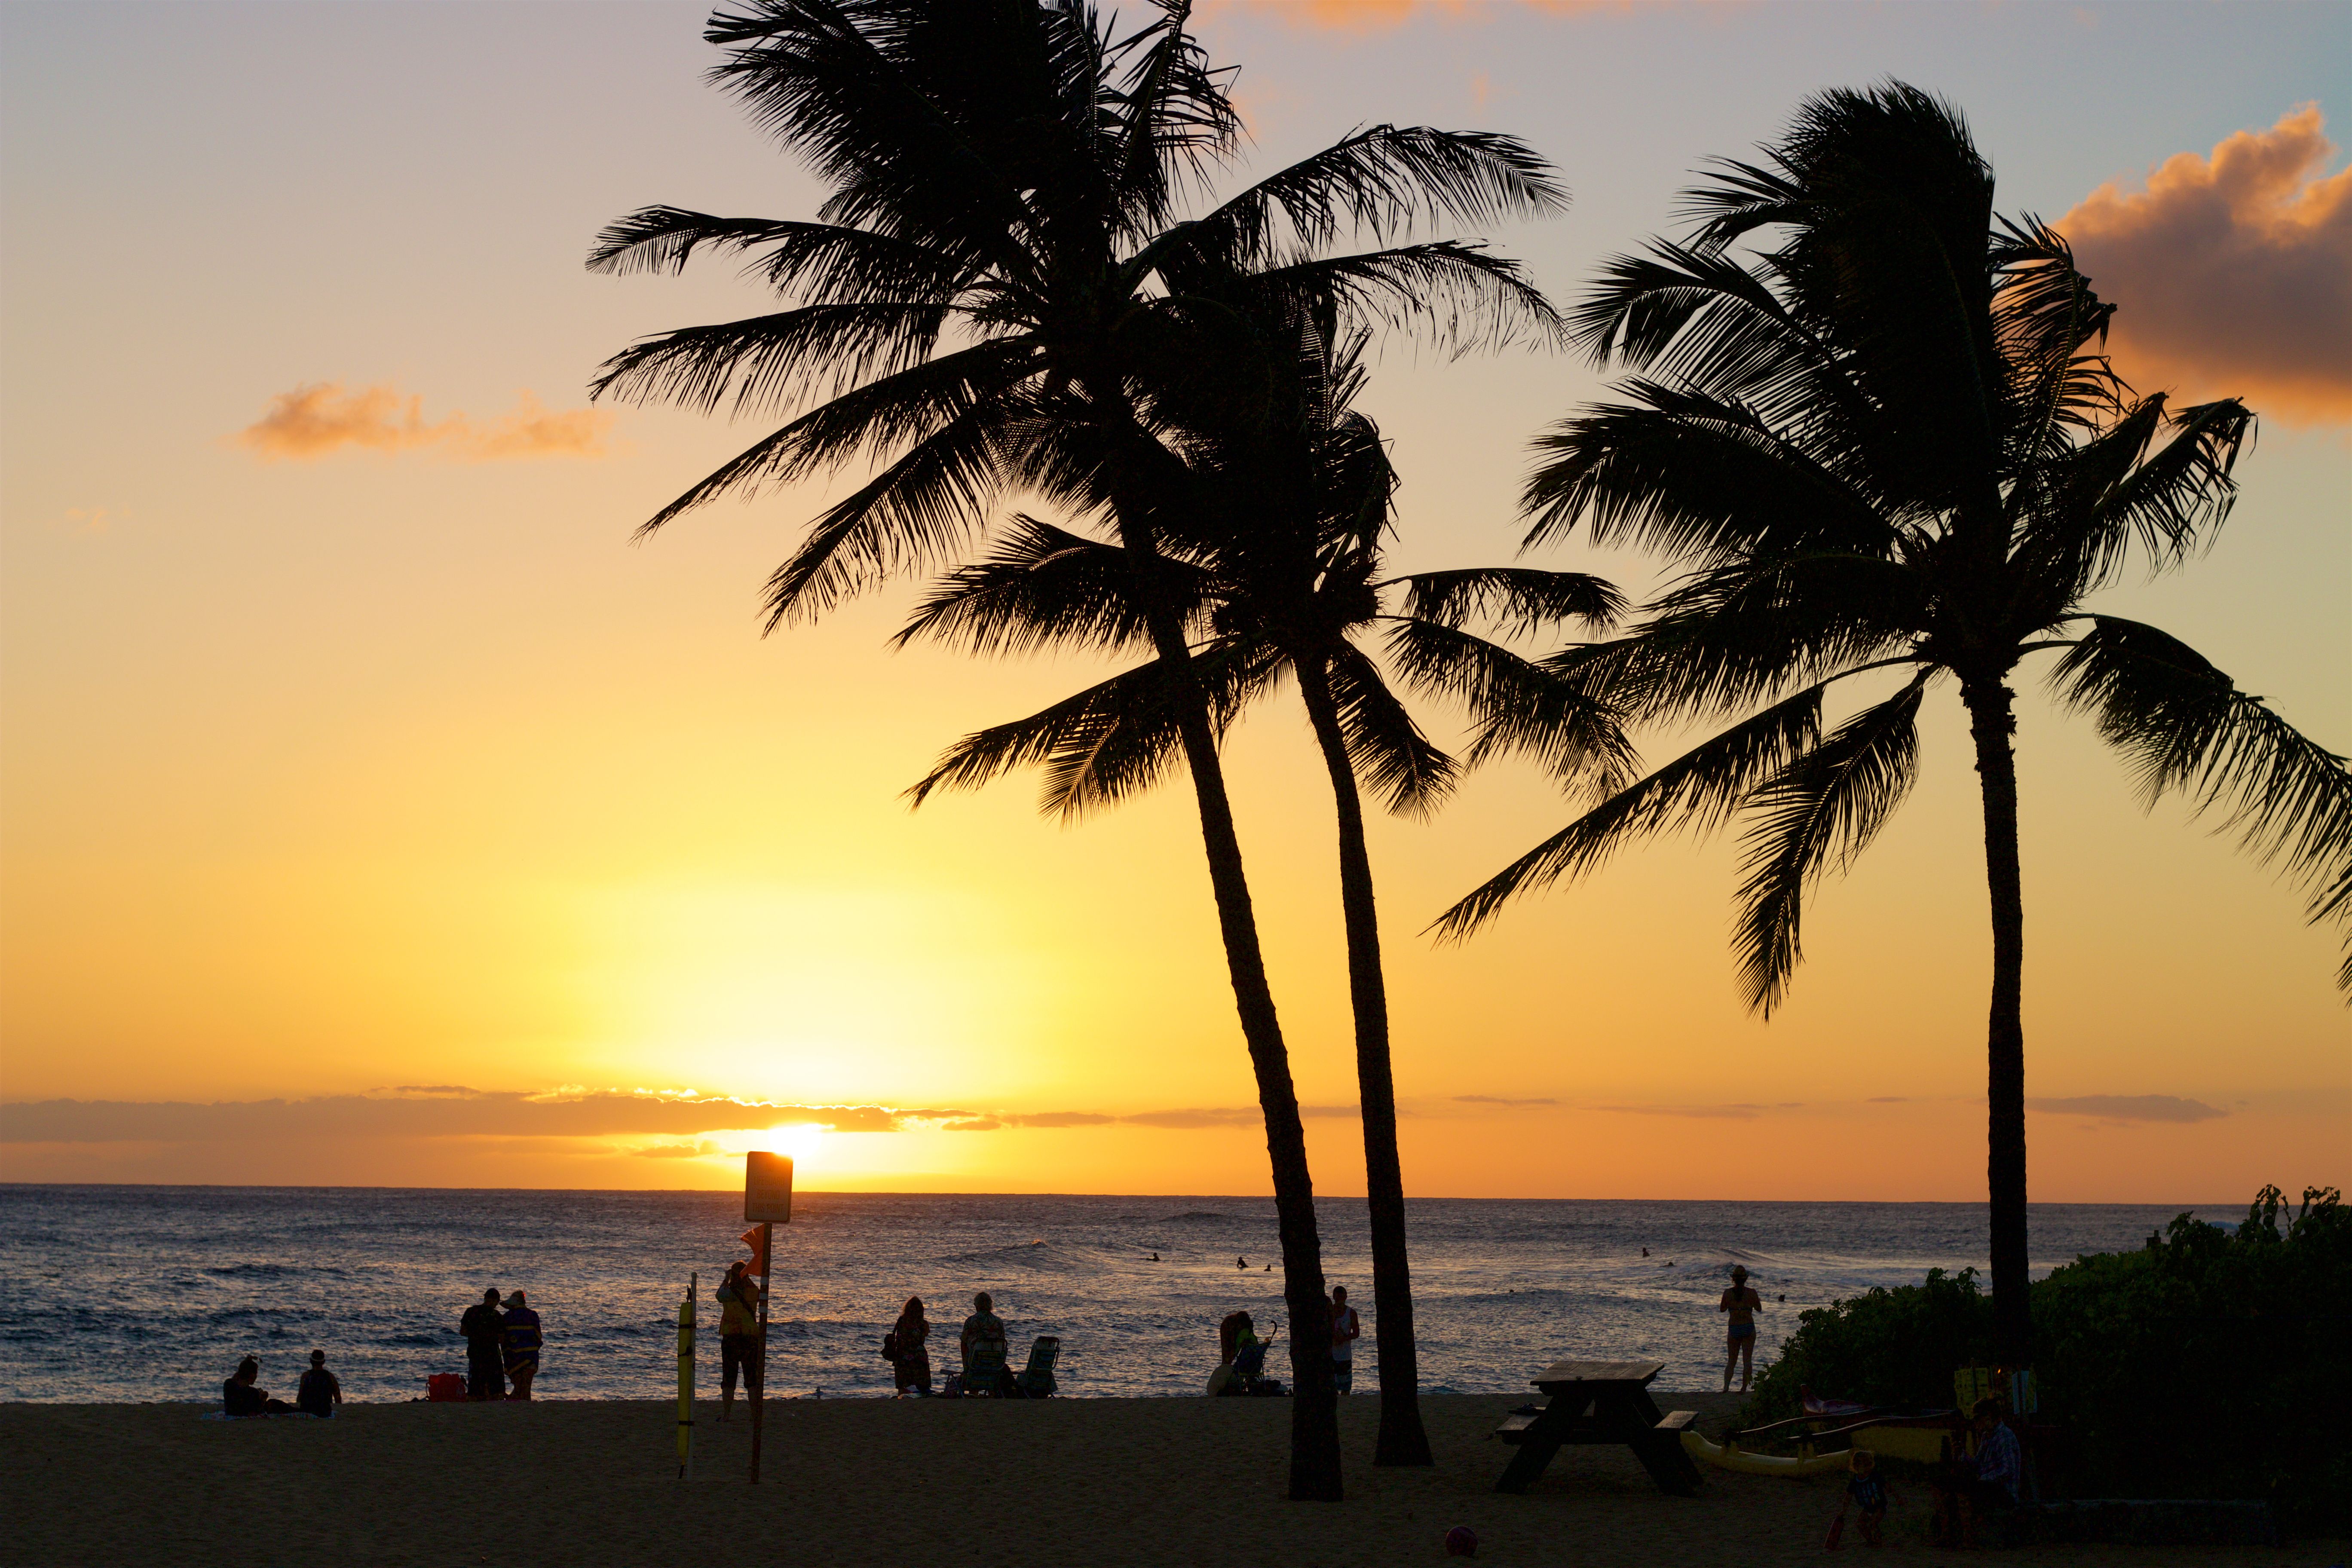 Sunset in Poipu, Kauai